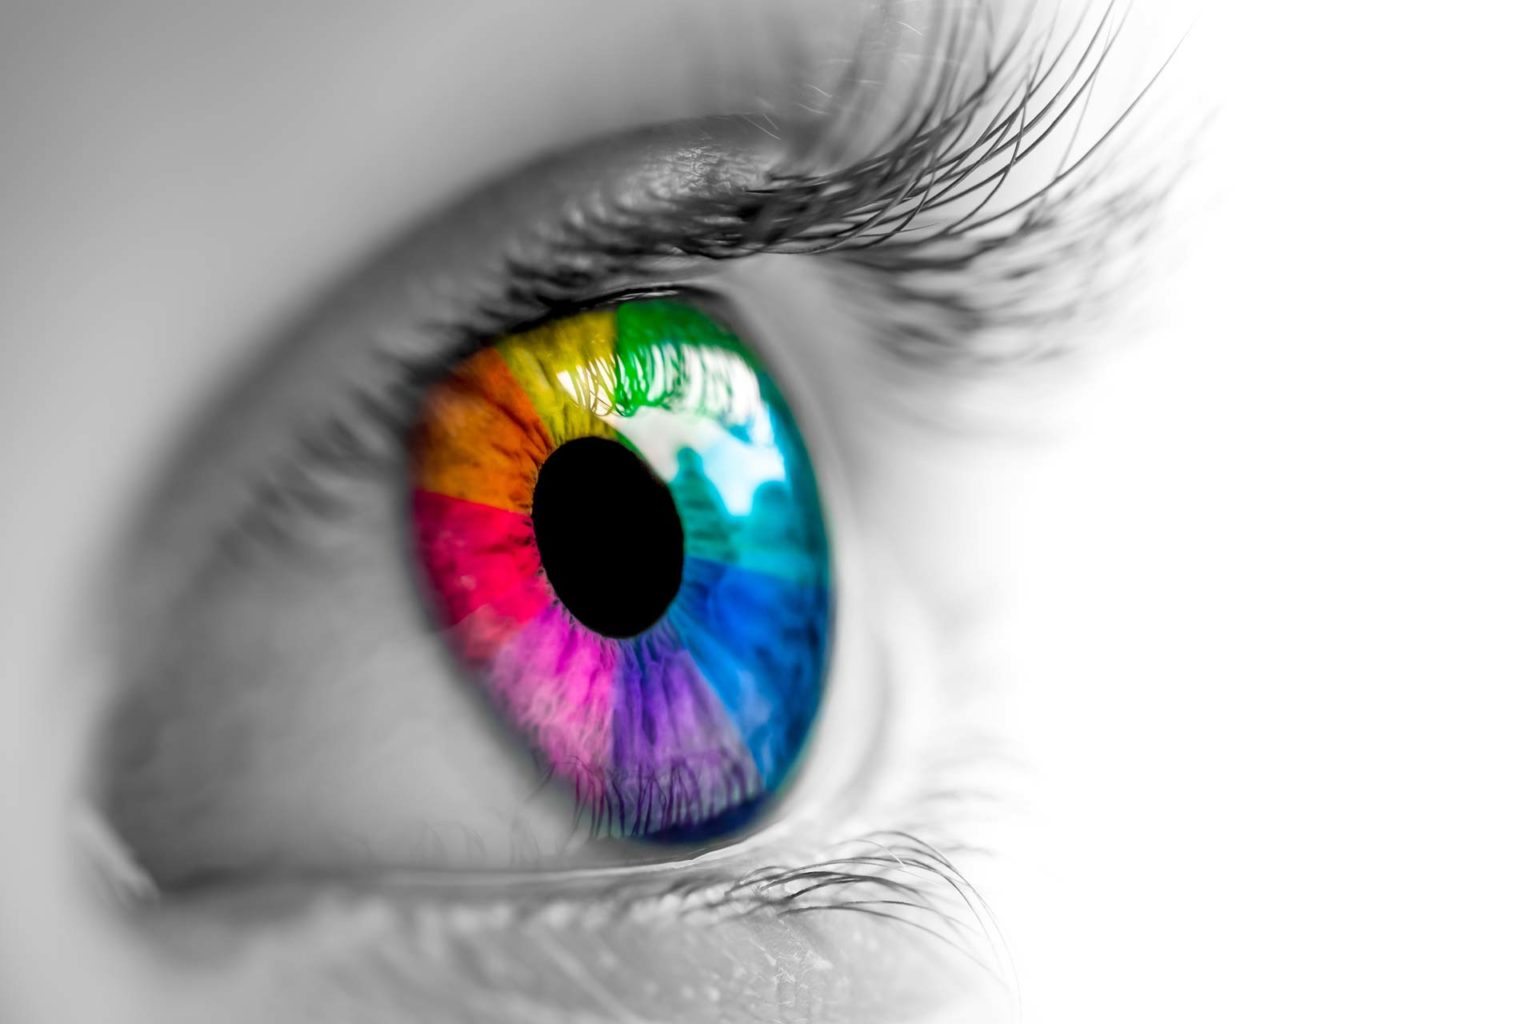 Individualisierung: Farben - Farben des Regenbogens in Auge